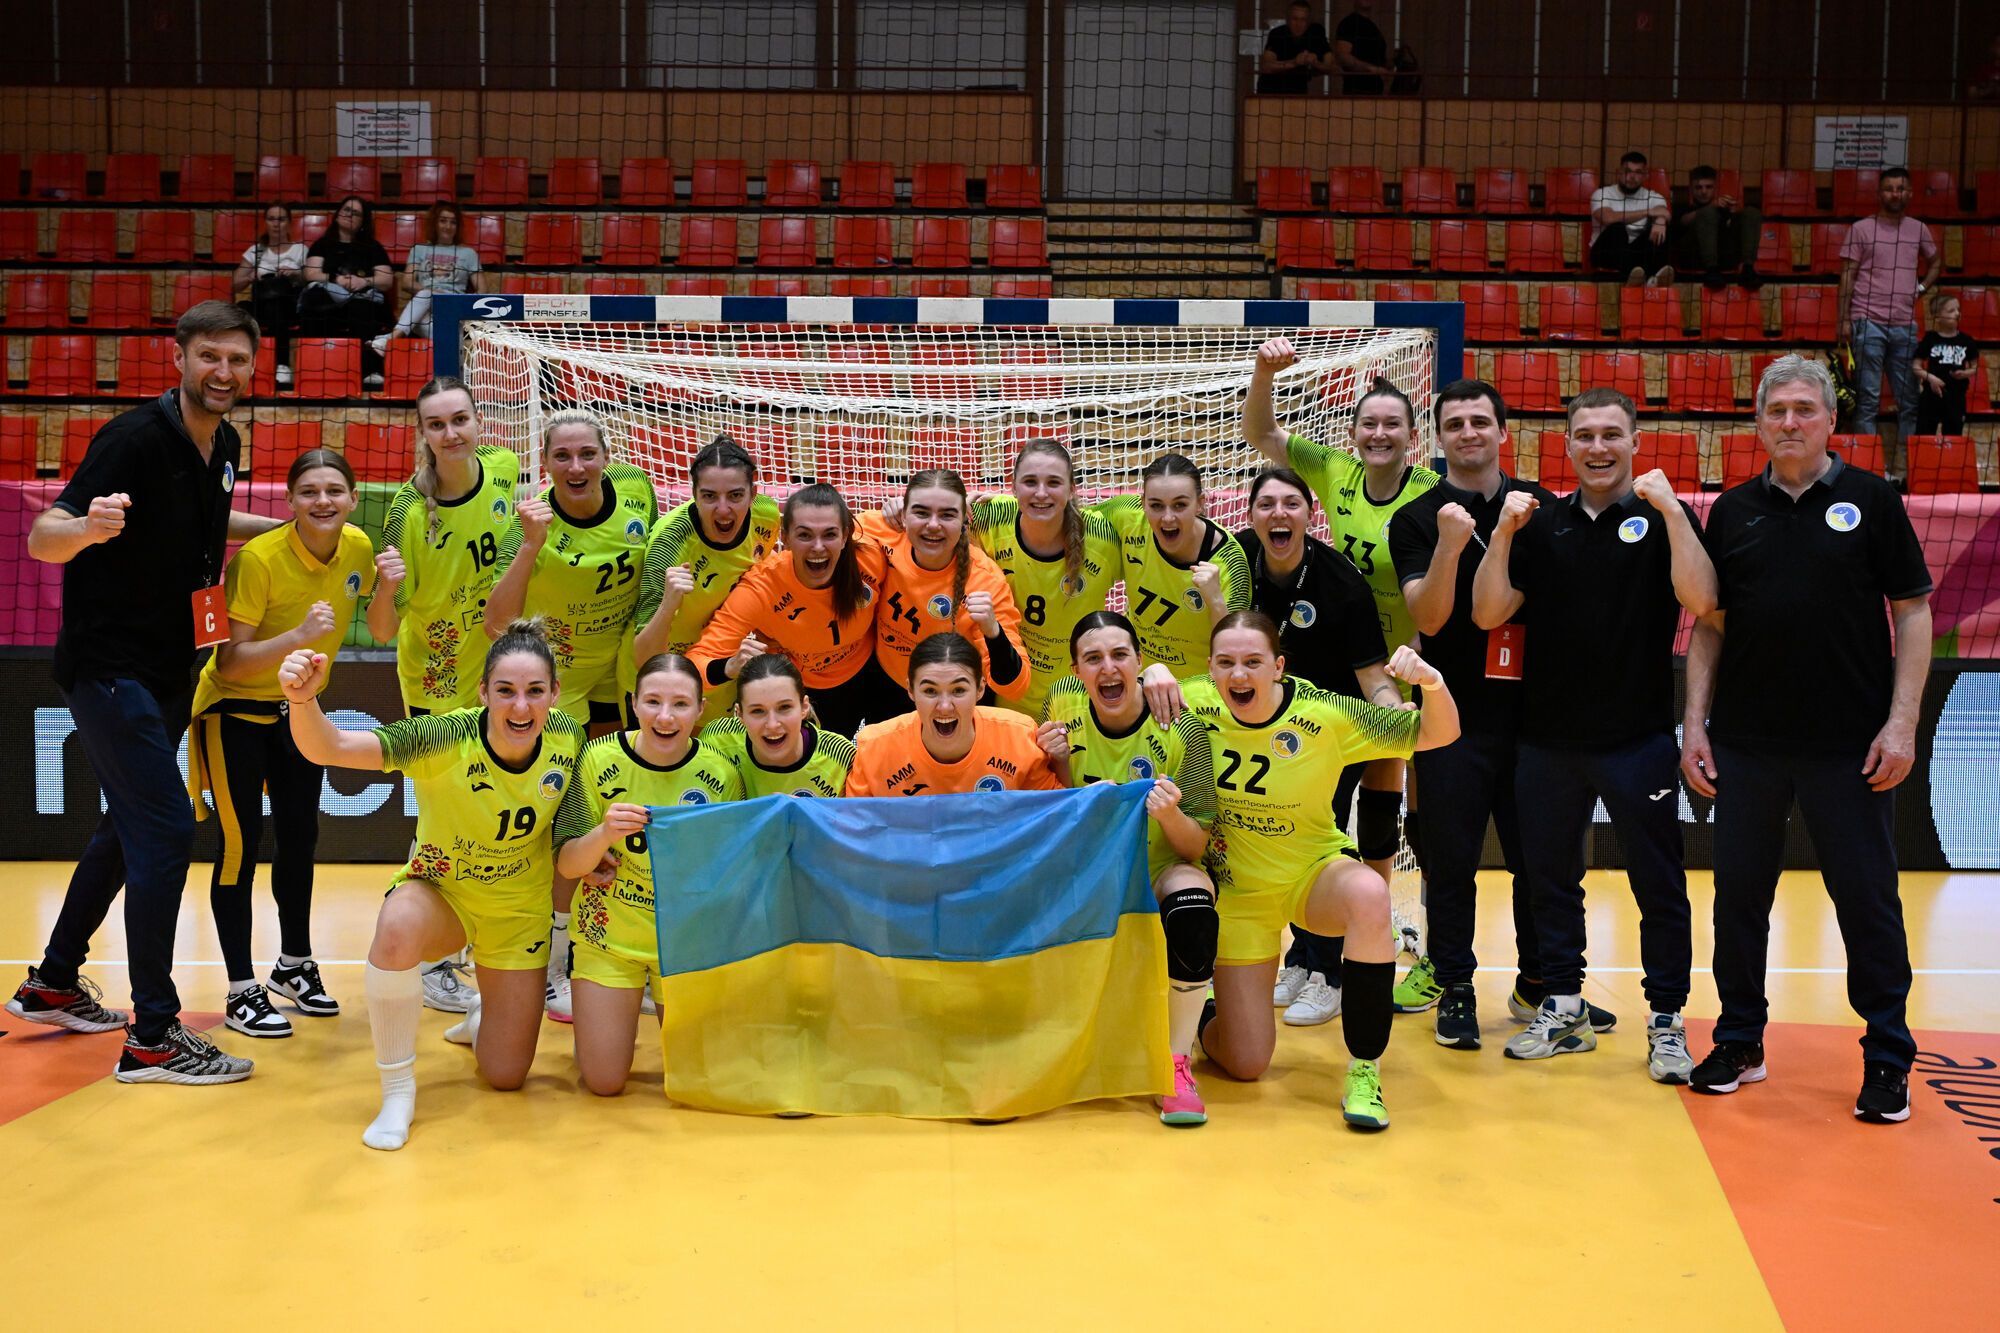 Впервые за 10 лет: сборная Украины вышла на чемпионат Европы по гандболу среди женщин